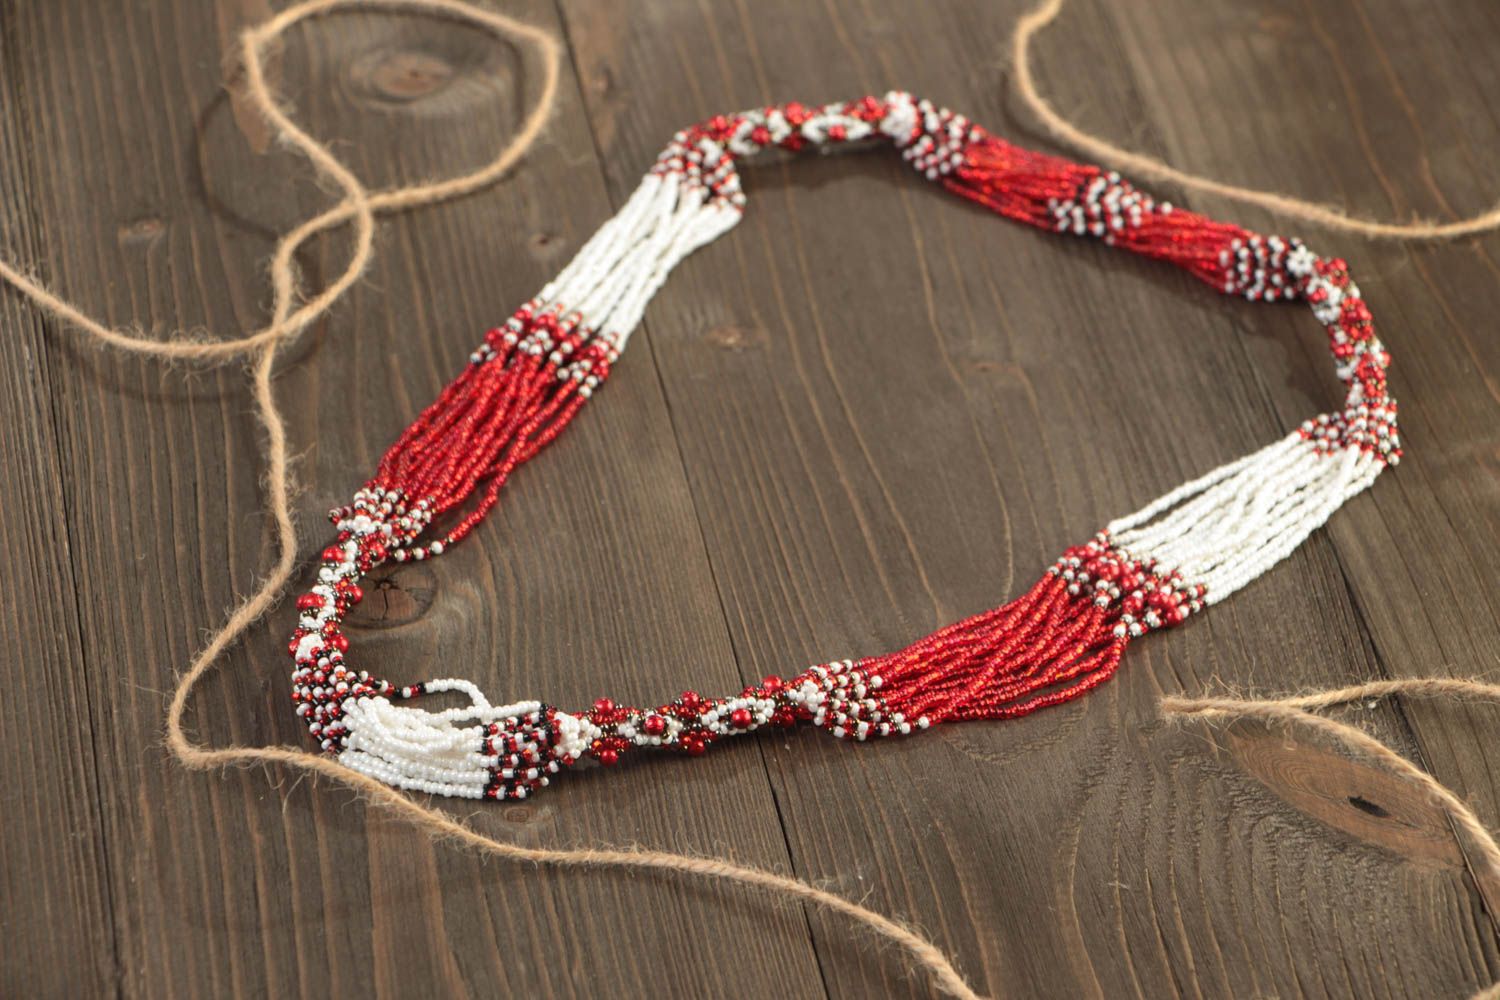 Ожерелье из бисера длинное красное с белым стильное этническое ручной работы фото 1